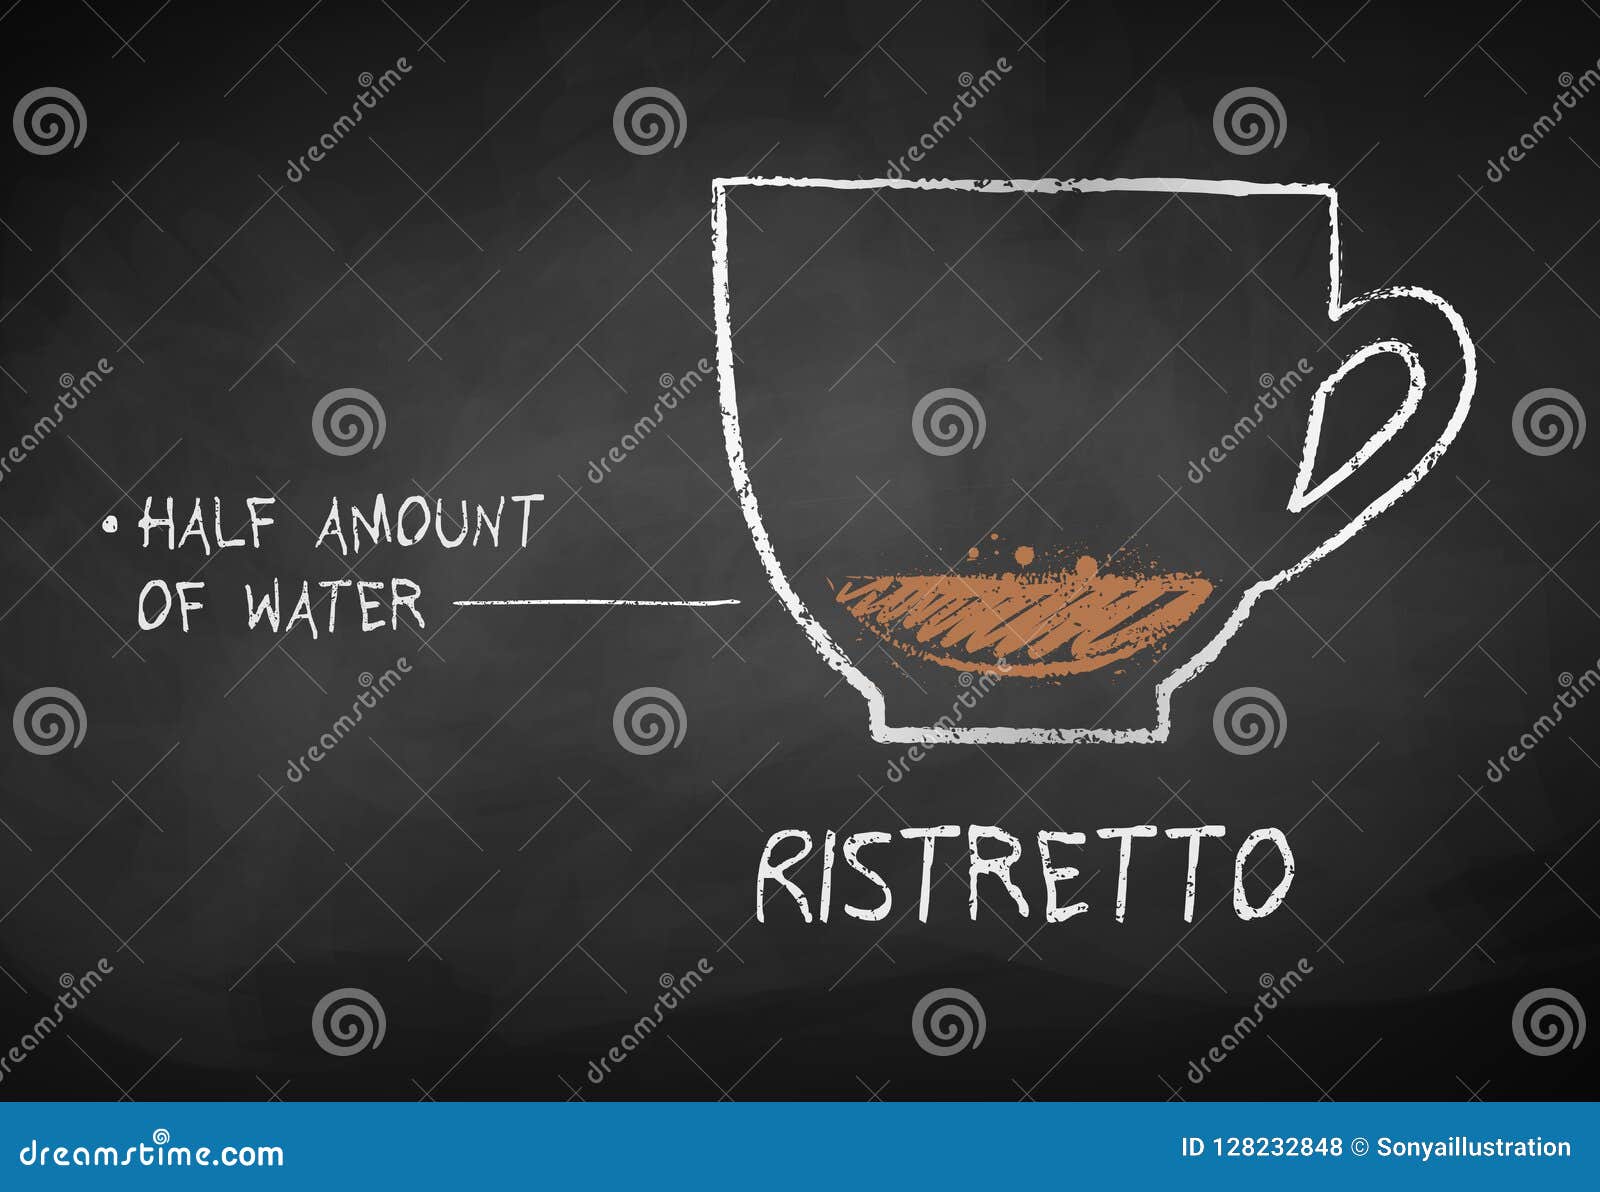 chalk sketch of ristretto coffee recipe